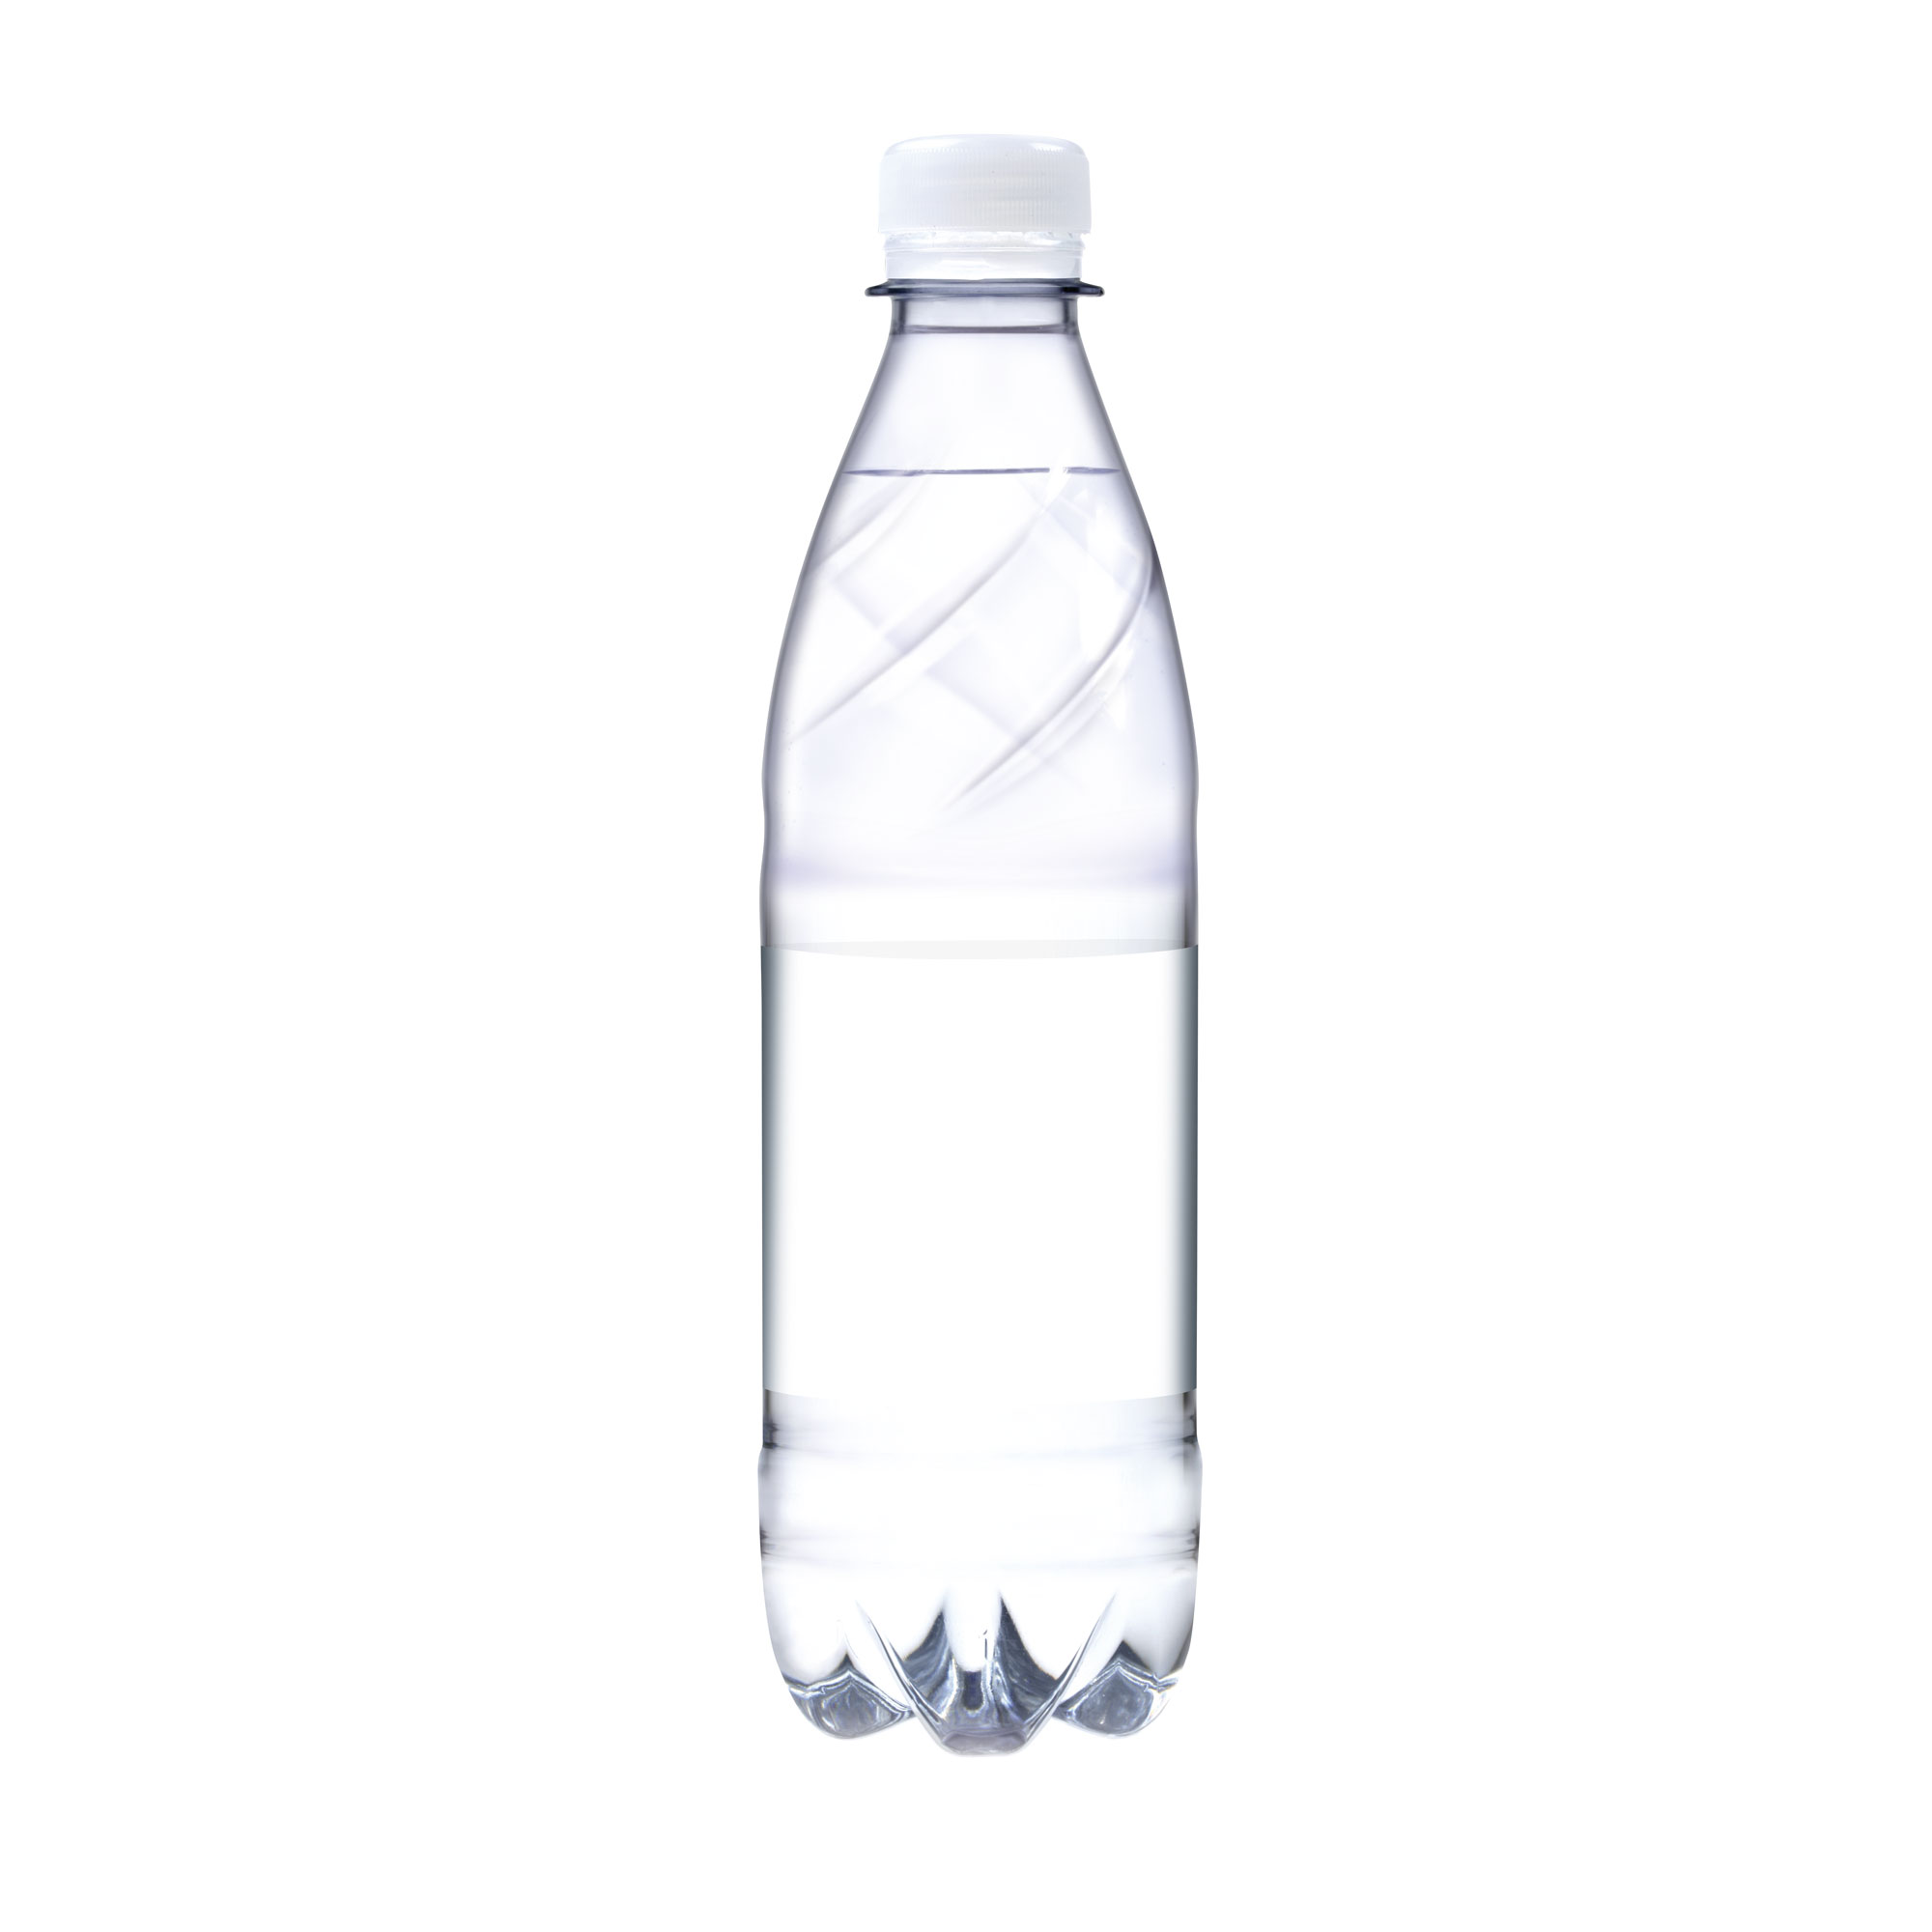 500 ml Tafelwasser sanft prickelnd (Flasche Budget) - Smart Label